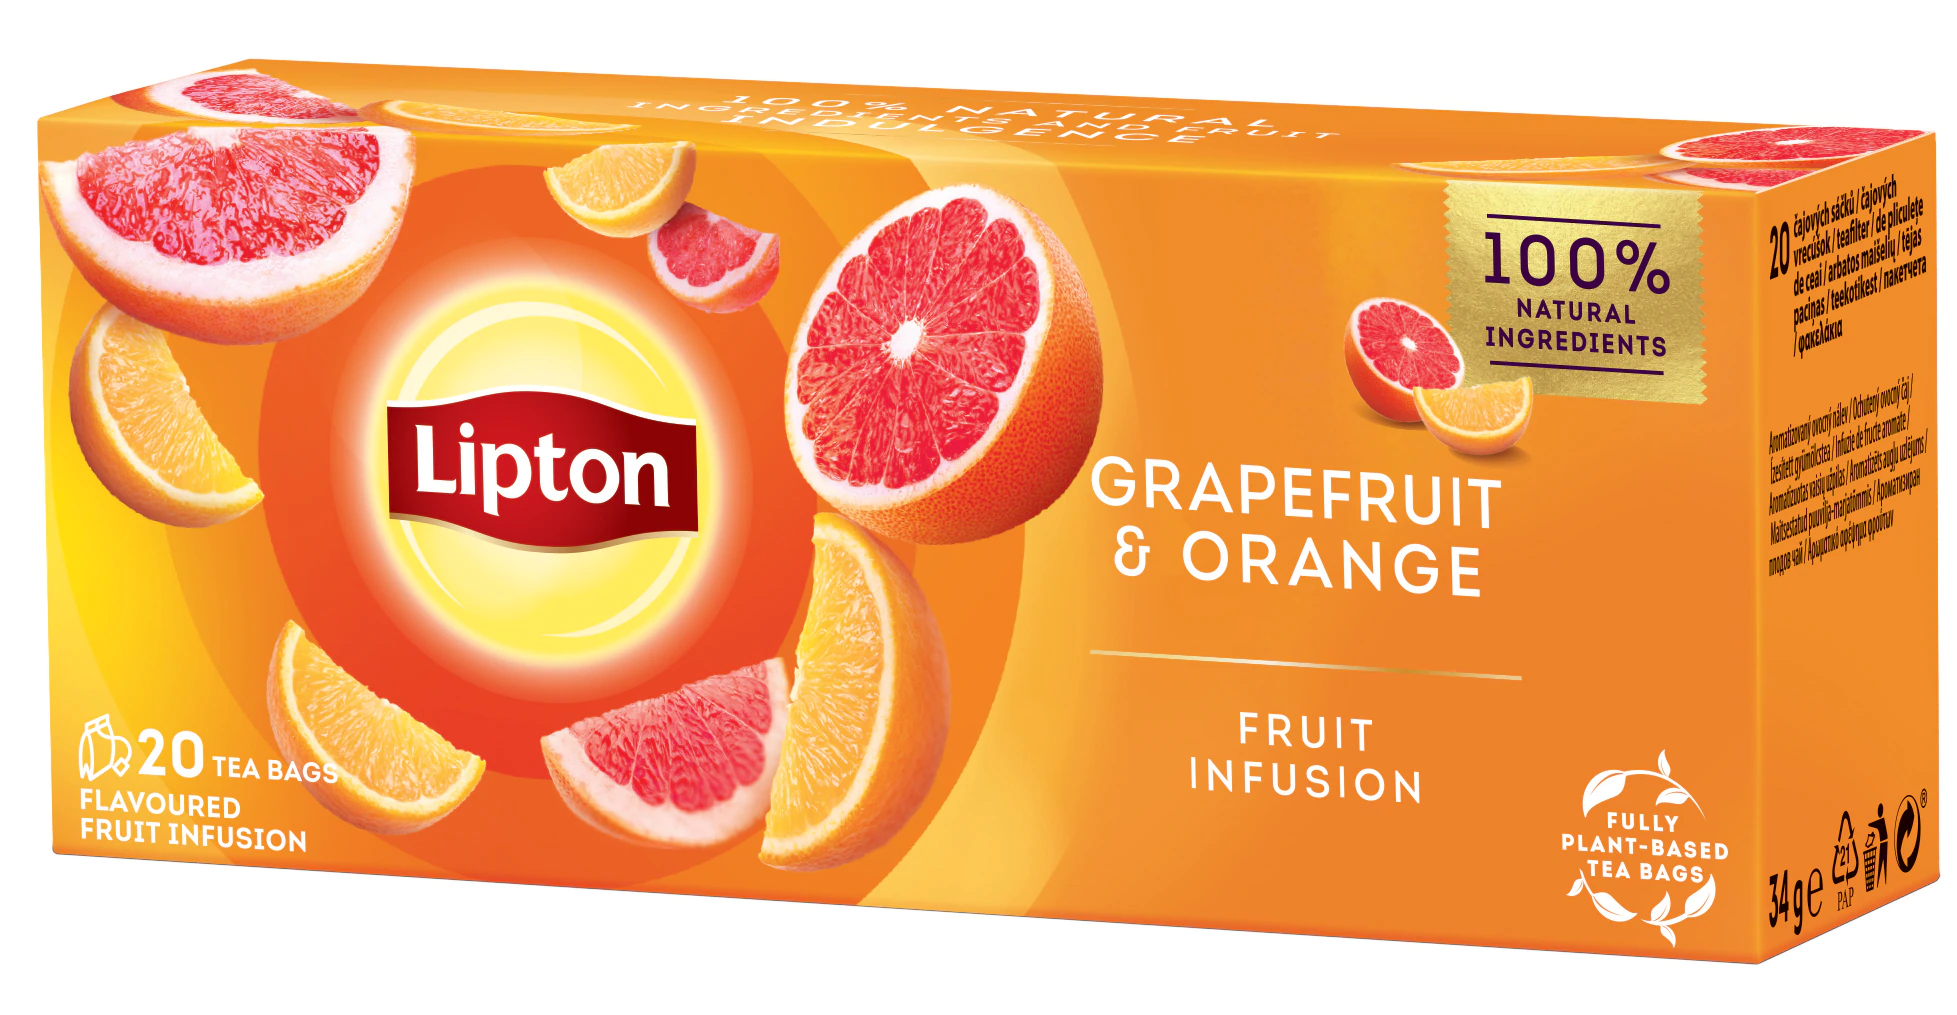 Ceaiuri - Ceai Lipton Fructe Grapefruit si Portocala 20 plicuri, farmacieieftina.ro